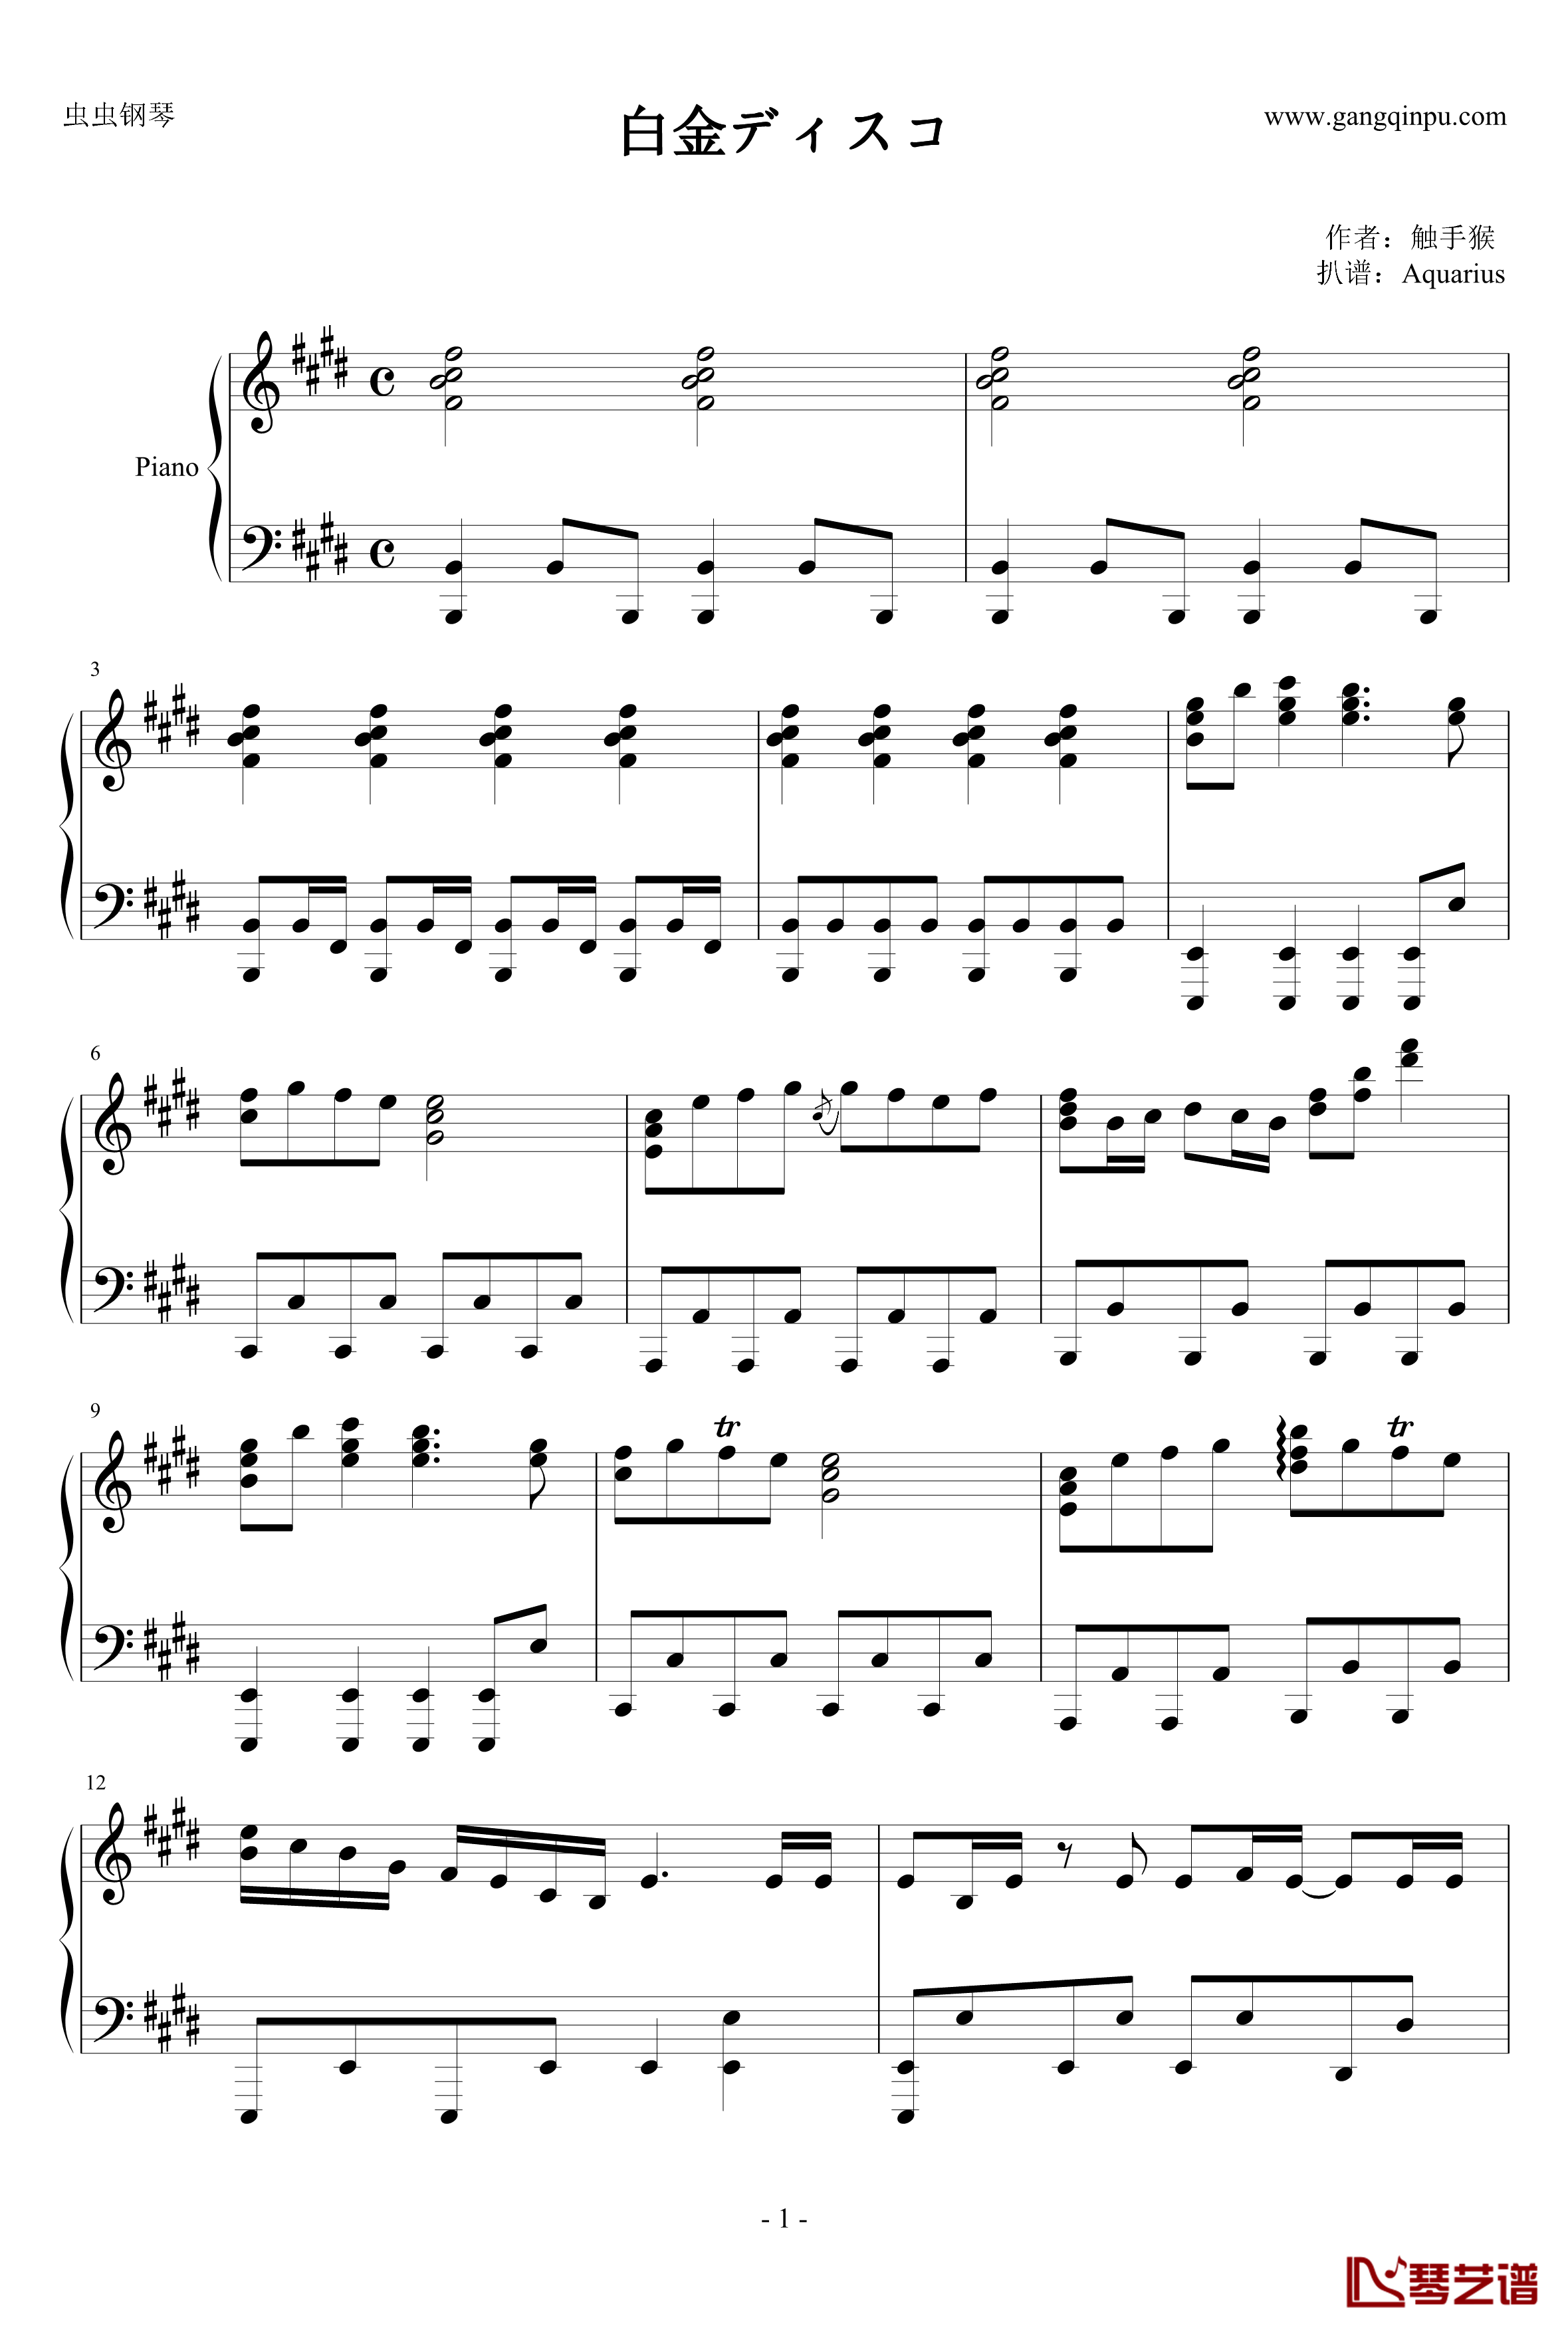 白金迪斯科钢琴谱-伪物语1